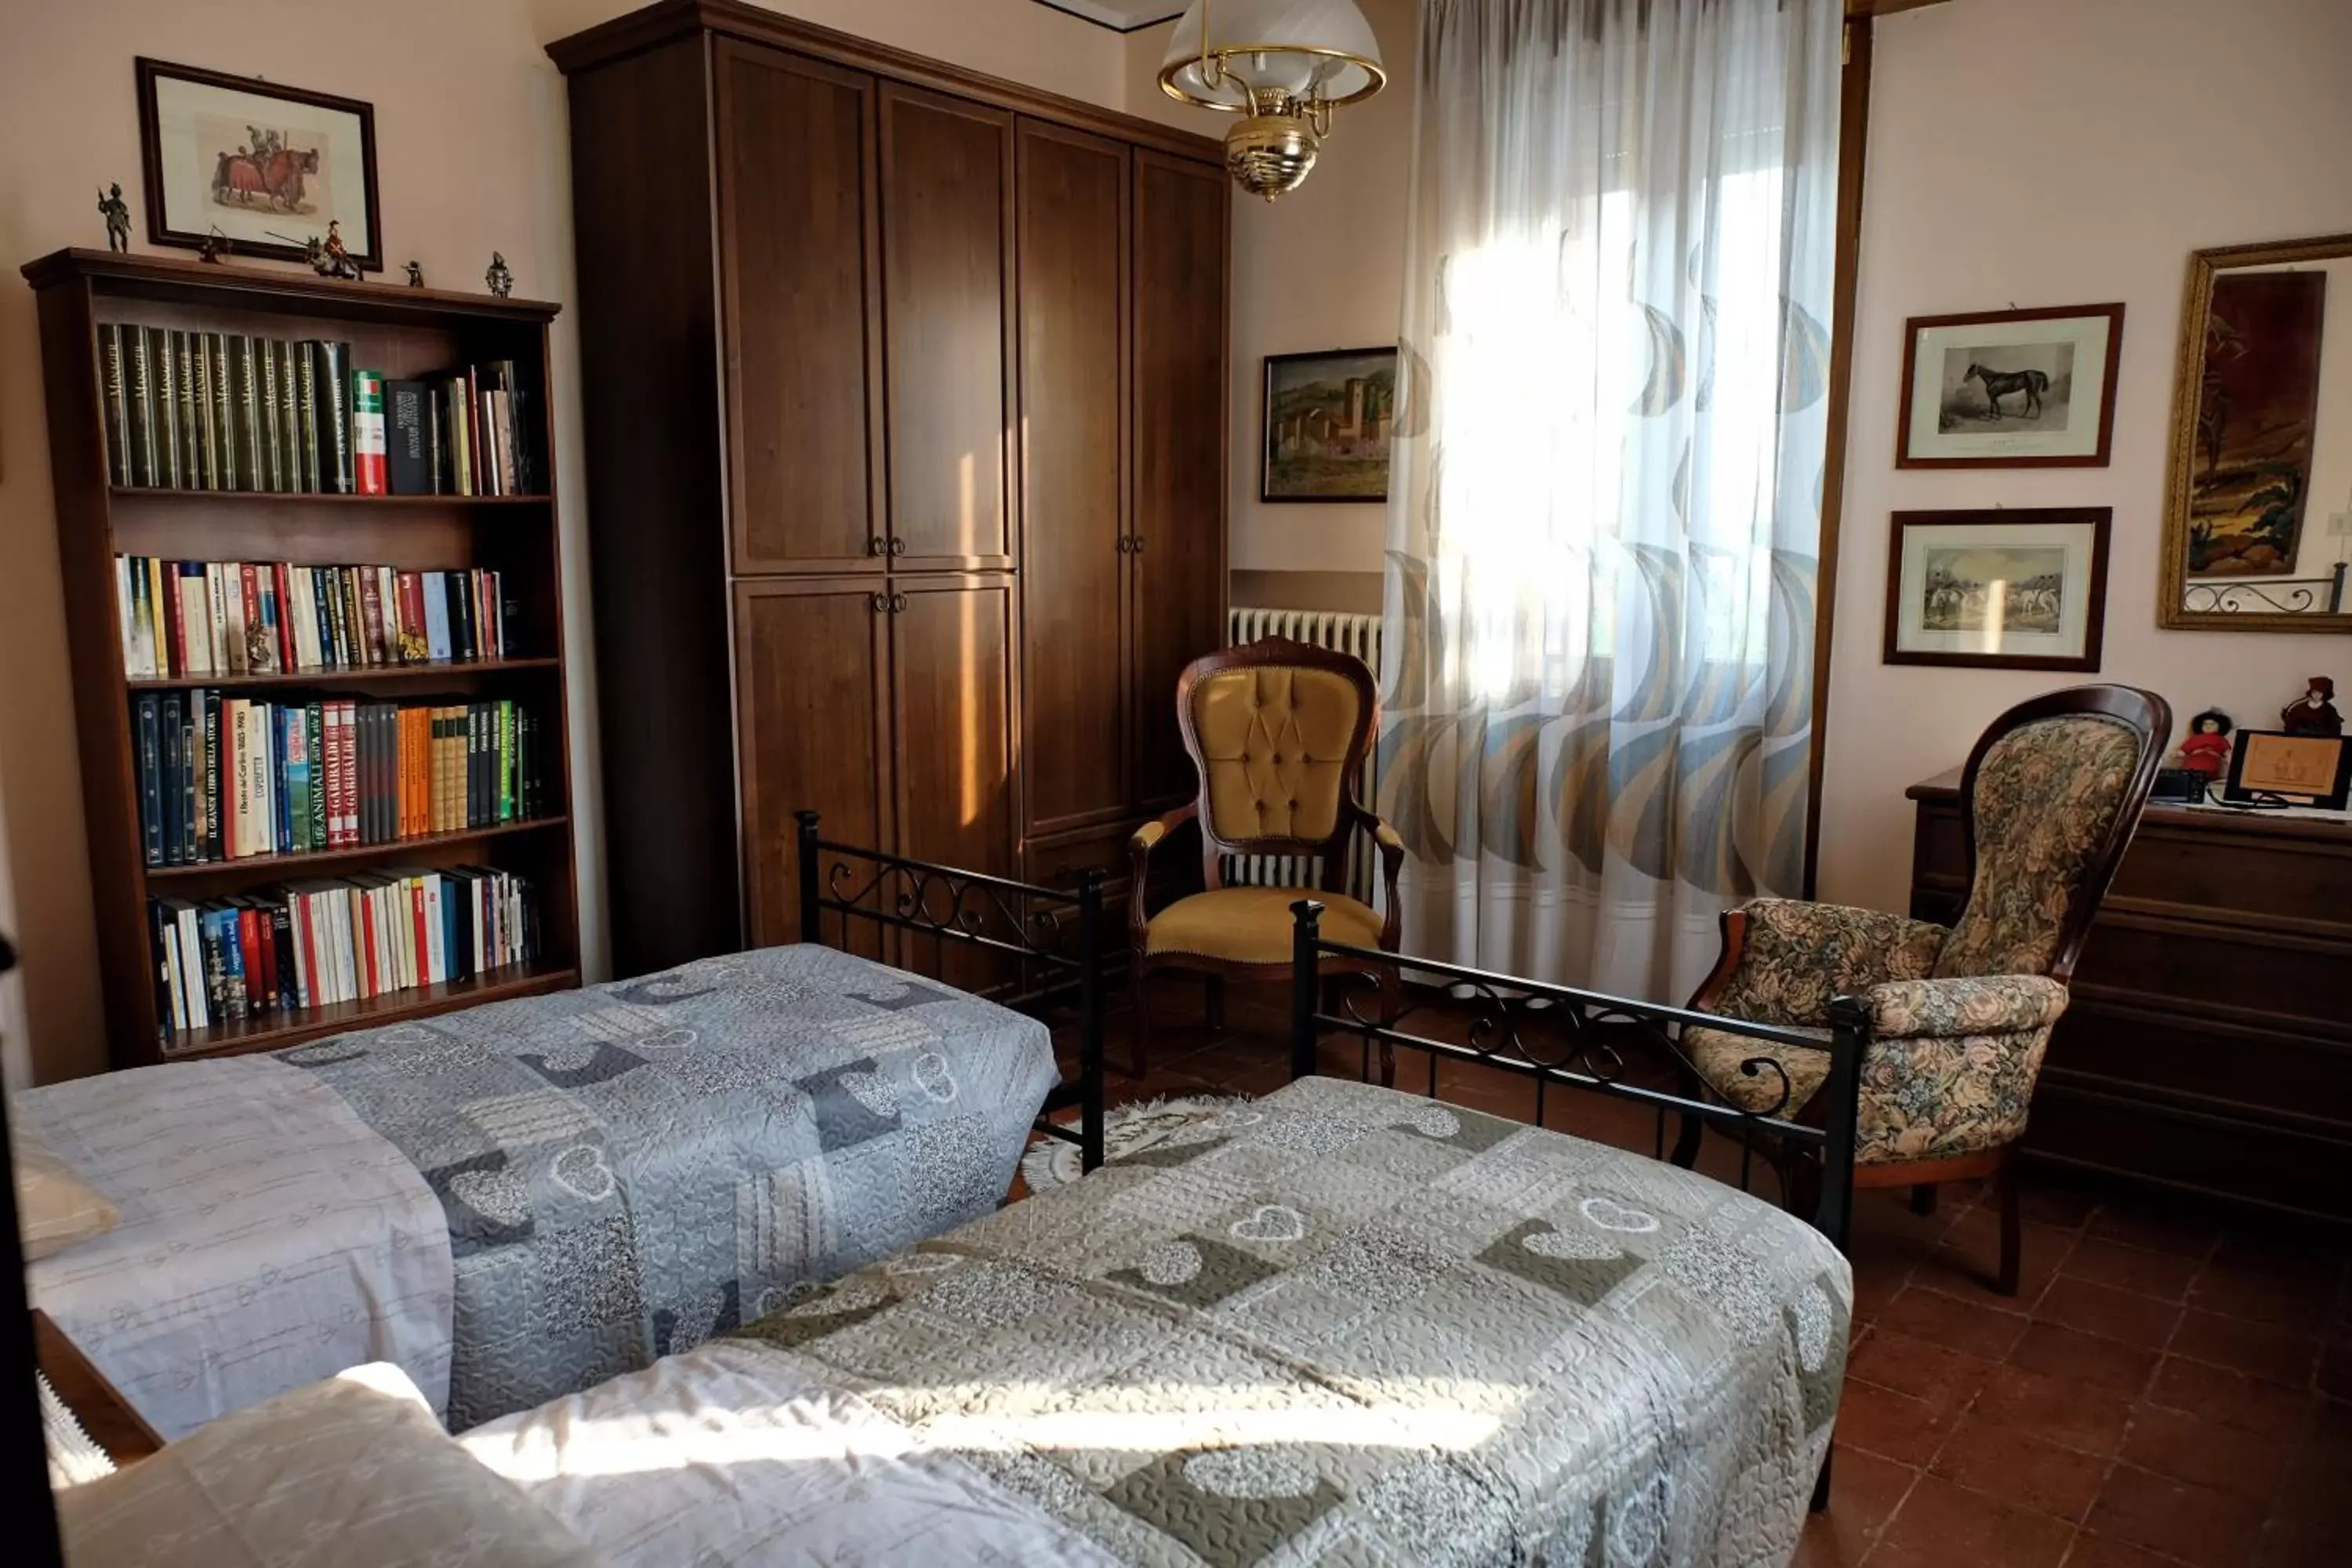 Photo of the whole room, Library in B&B "Il Cantastorie" - Casa Molinari-Boldrini